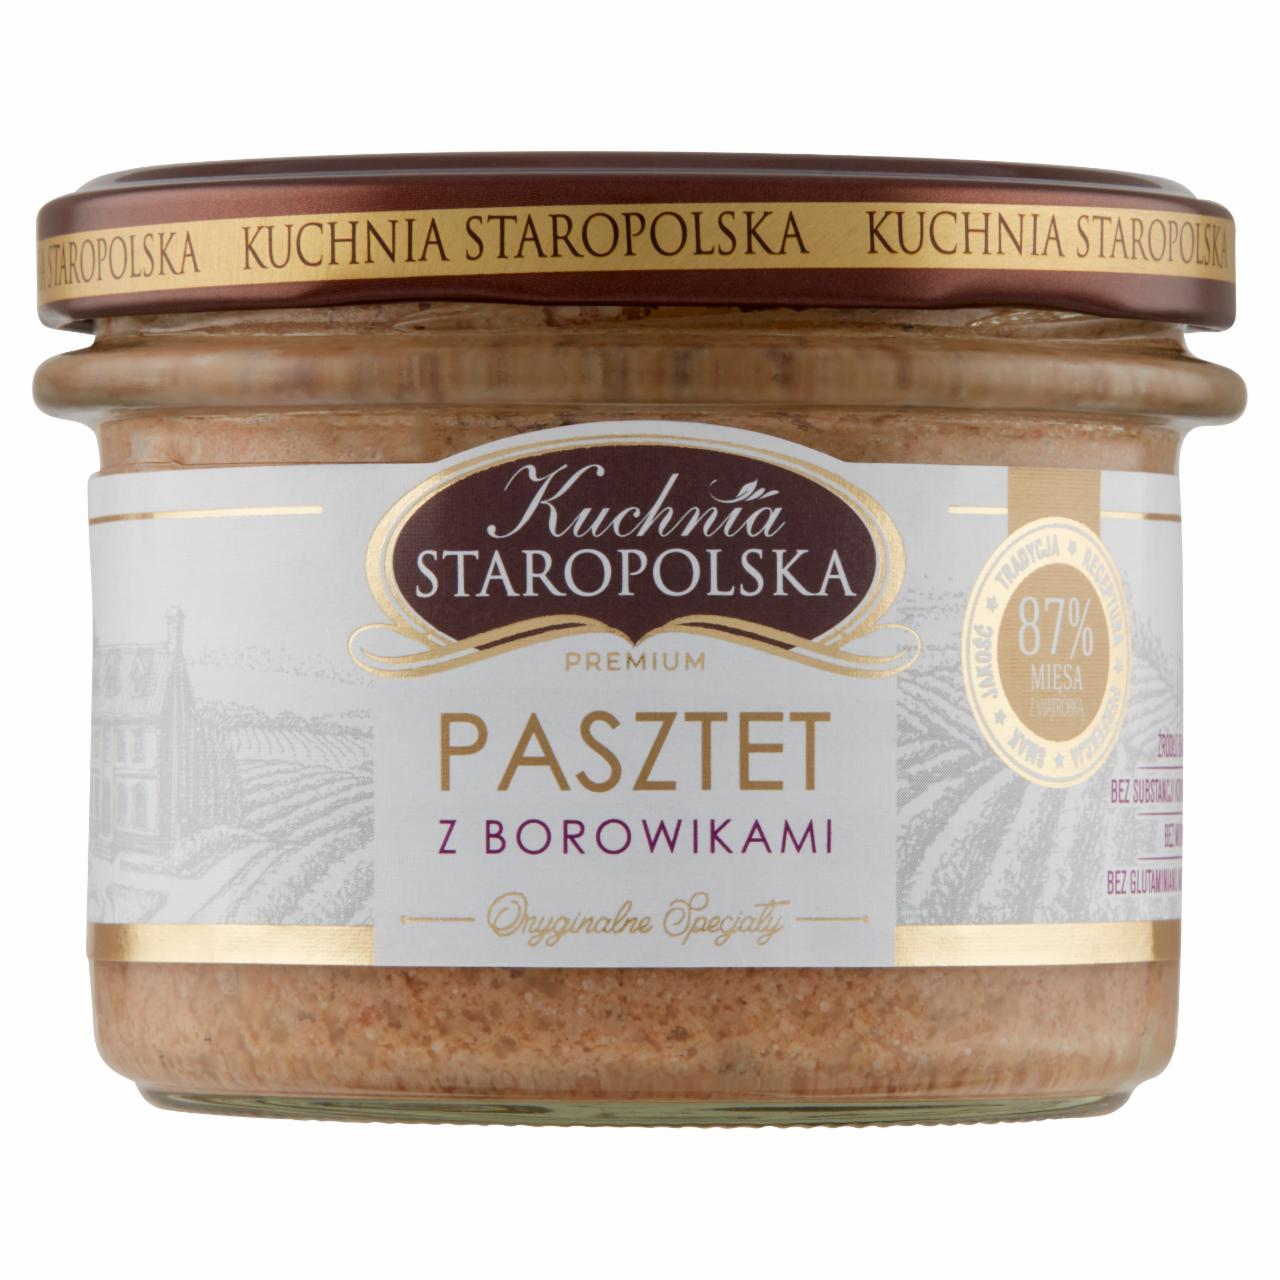 Zdjęcia - Kuchnia Staropolska Premium Pasztet z borowikami 160 g